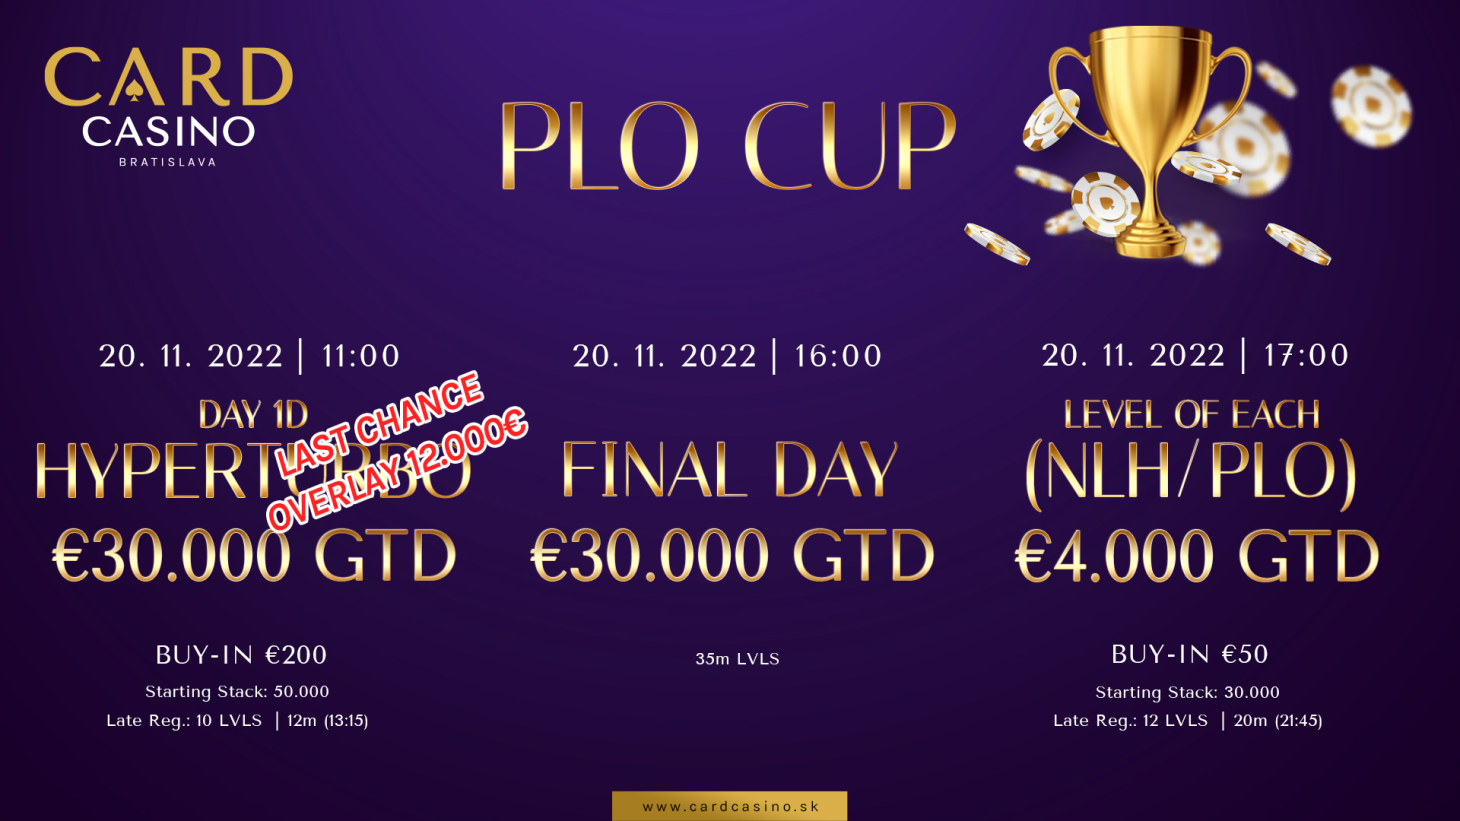 Der PLO Cup OVERLAY mit €12.000 GTD